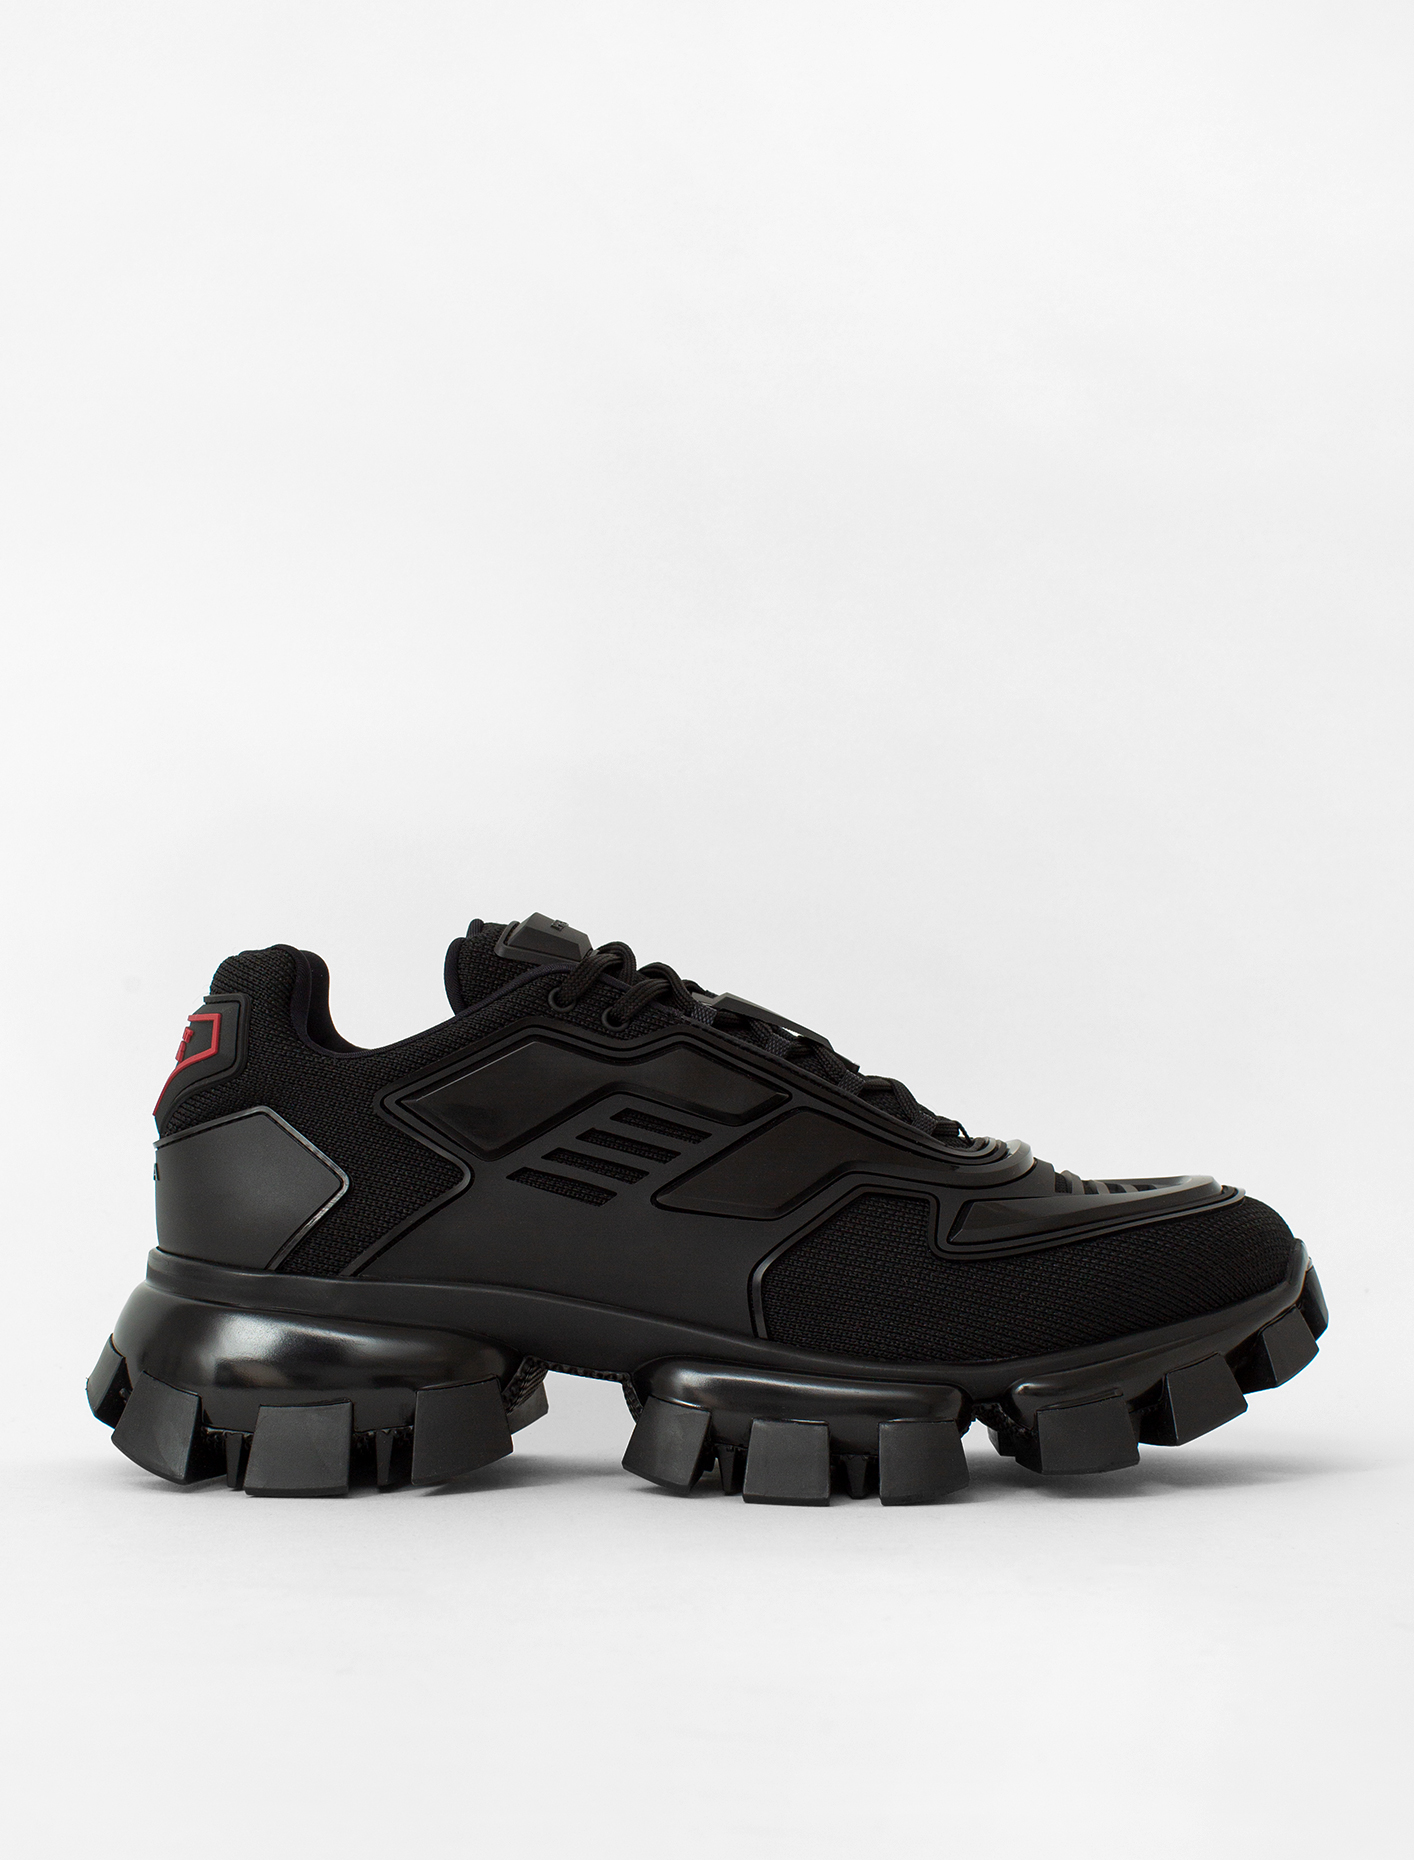 Prada Cloudbust Thunder Knit Menswear Sneaker in Black | Voo Store ...